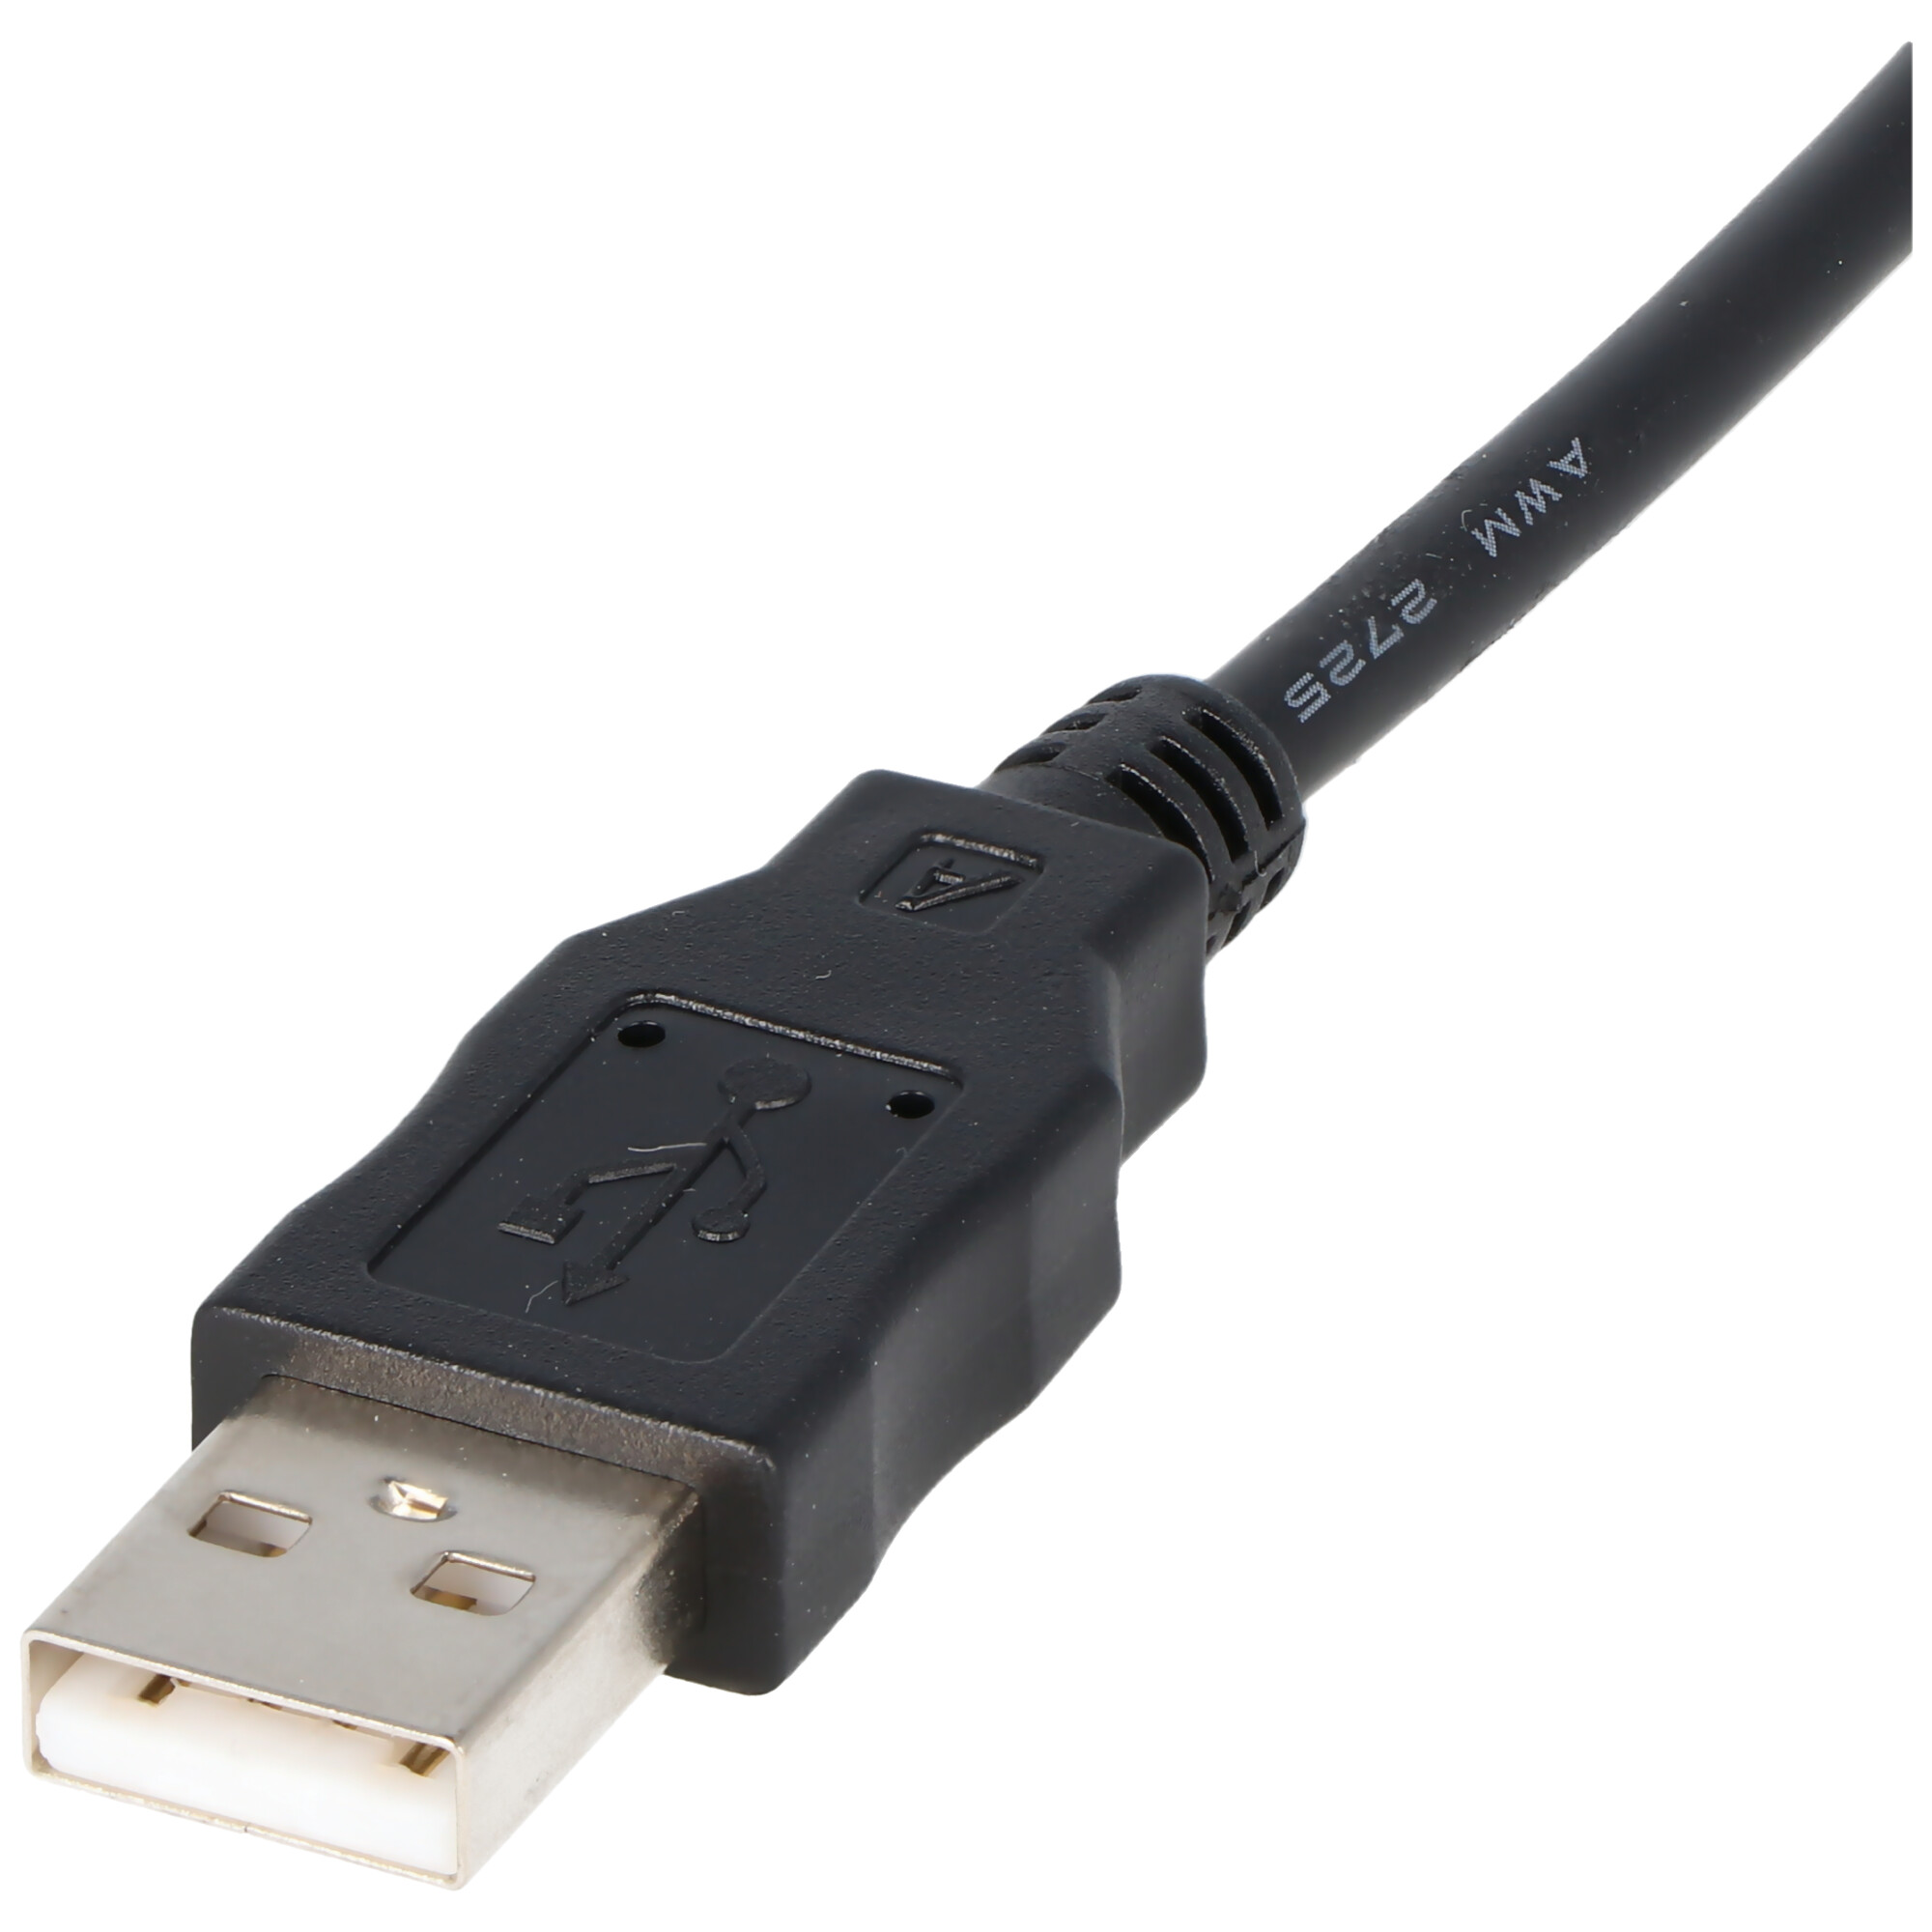 USB-Kabel passend für Casio, Nikon, Panasonic Lumix K1HA08CD0019